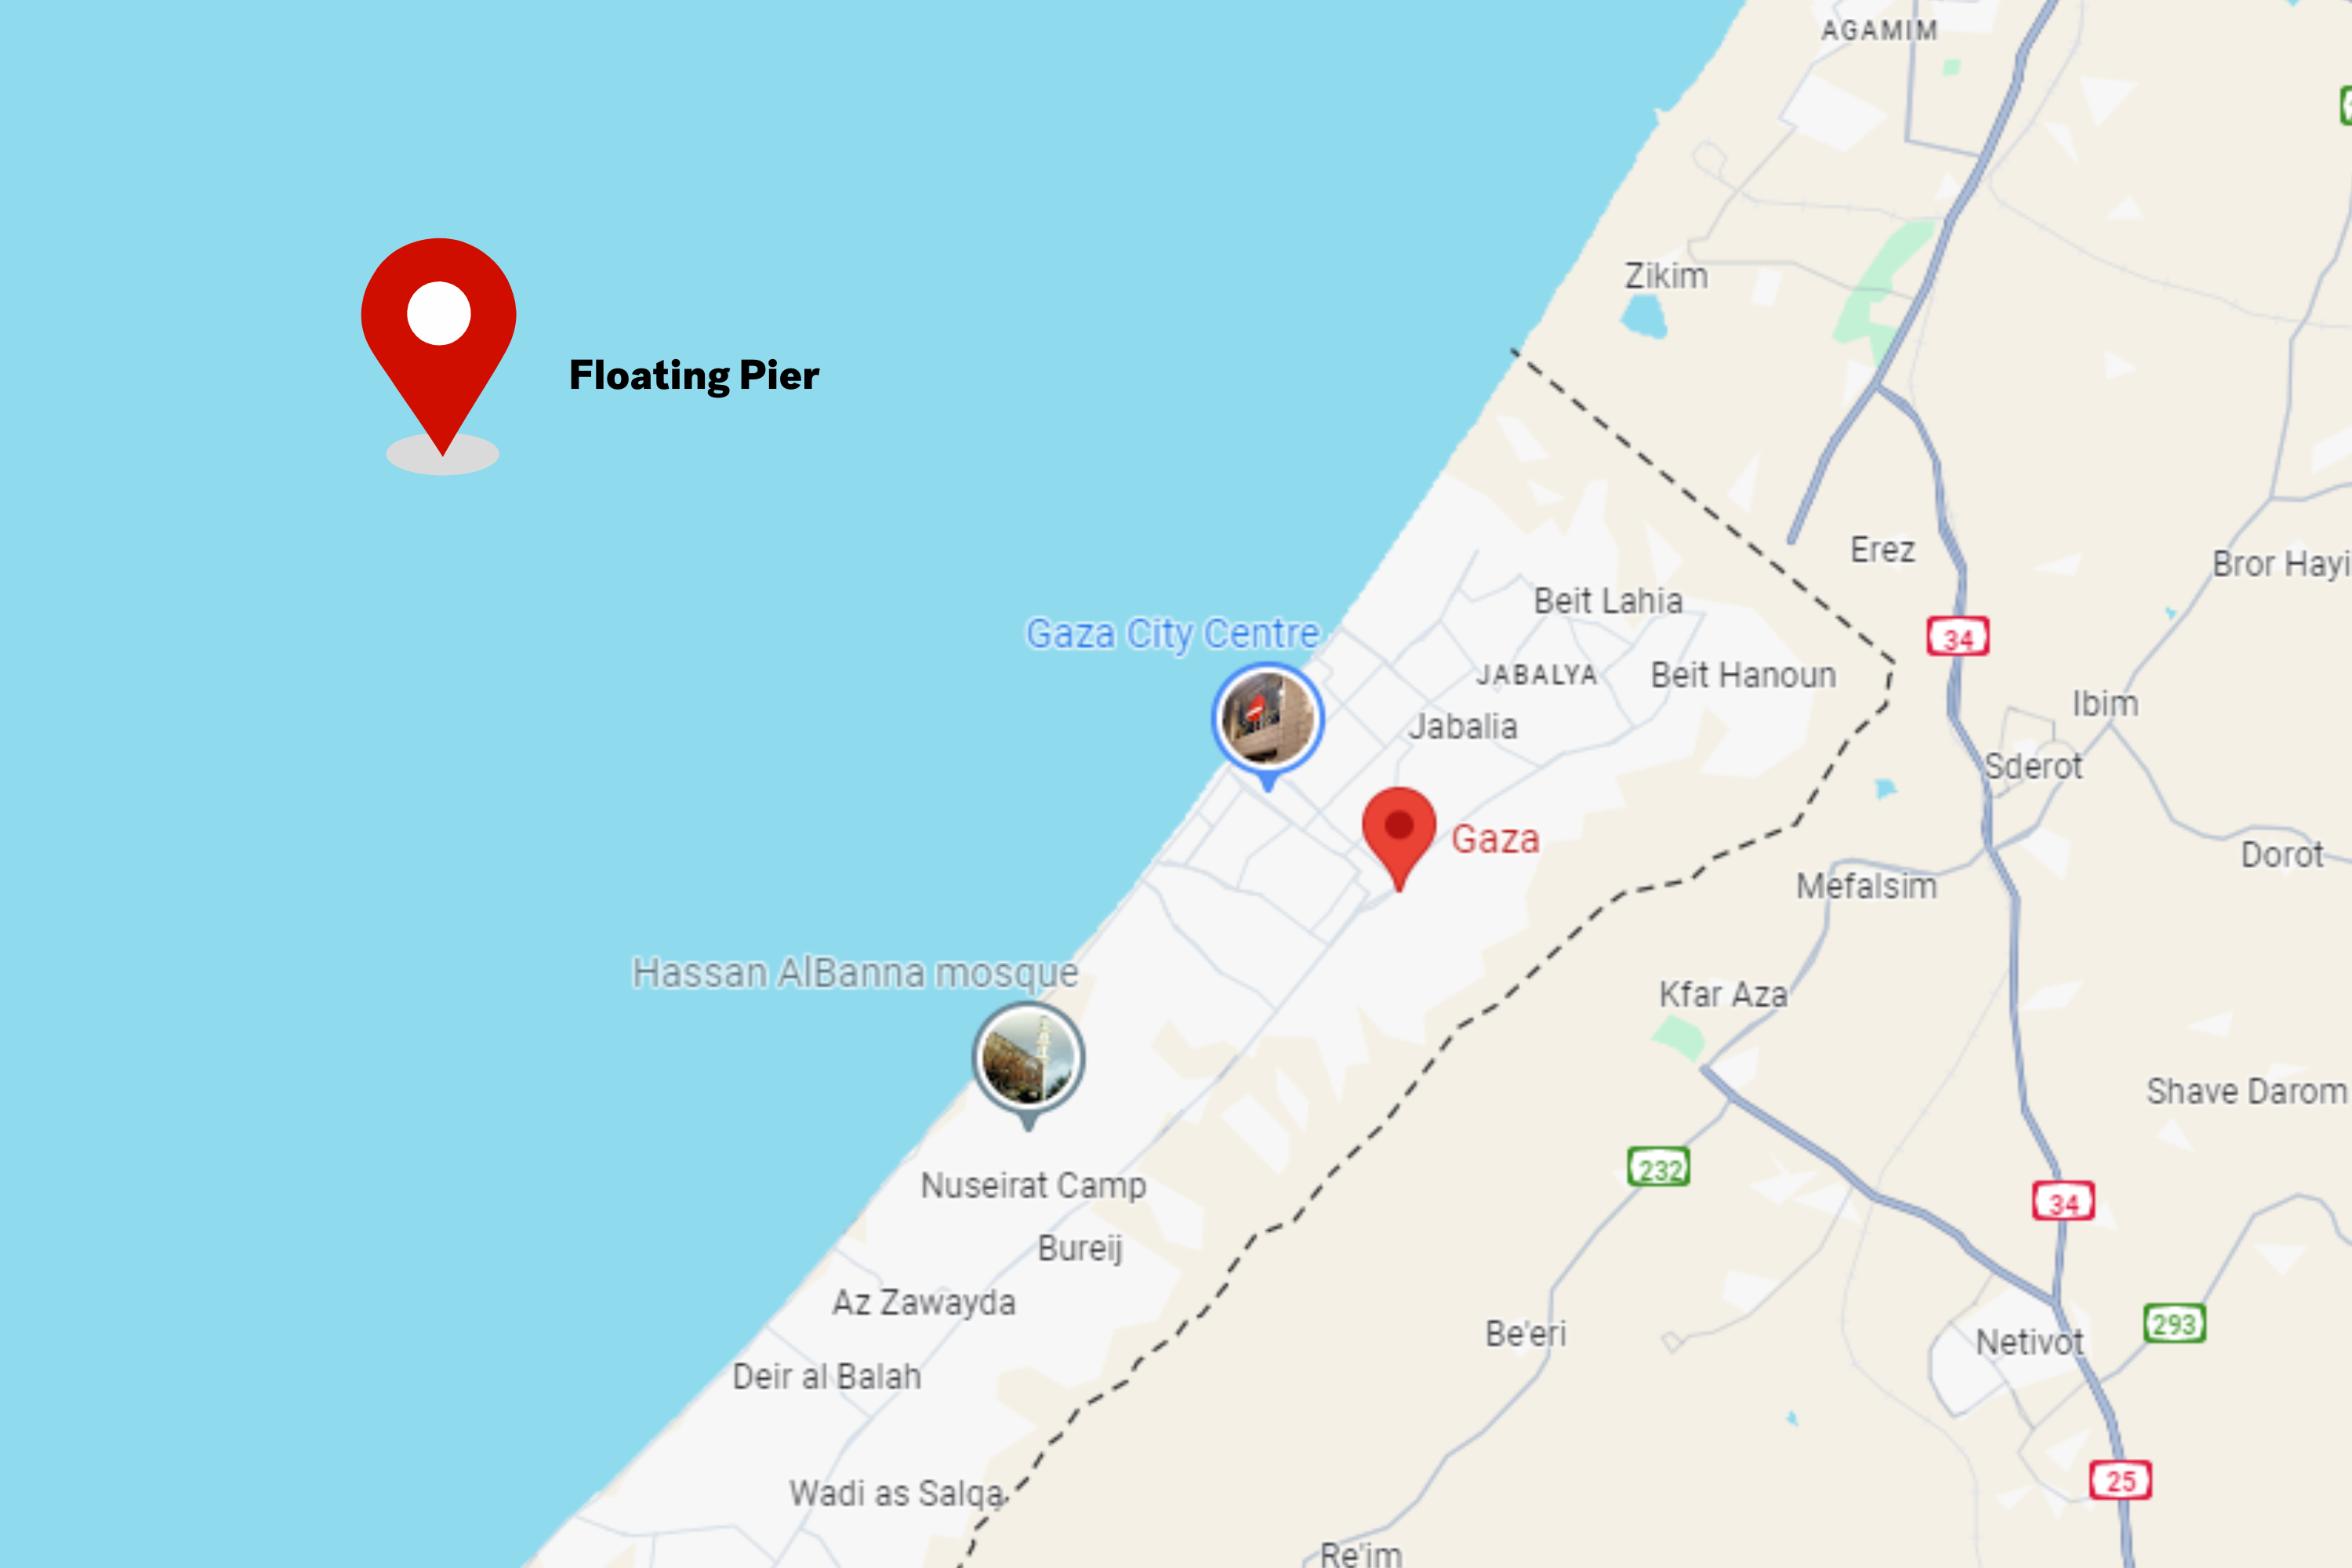 Une carte et des photos de Gaza montrent la construction d’une jetée aux États-Unis